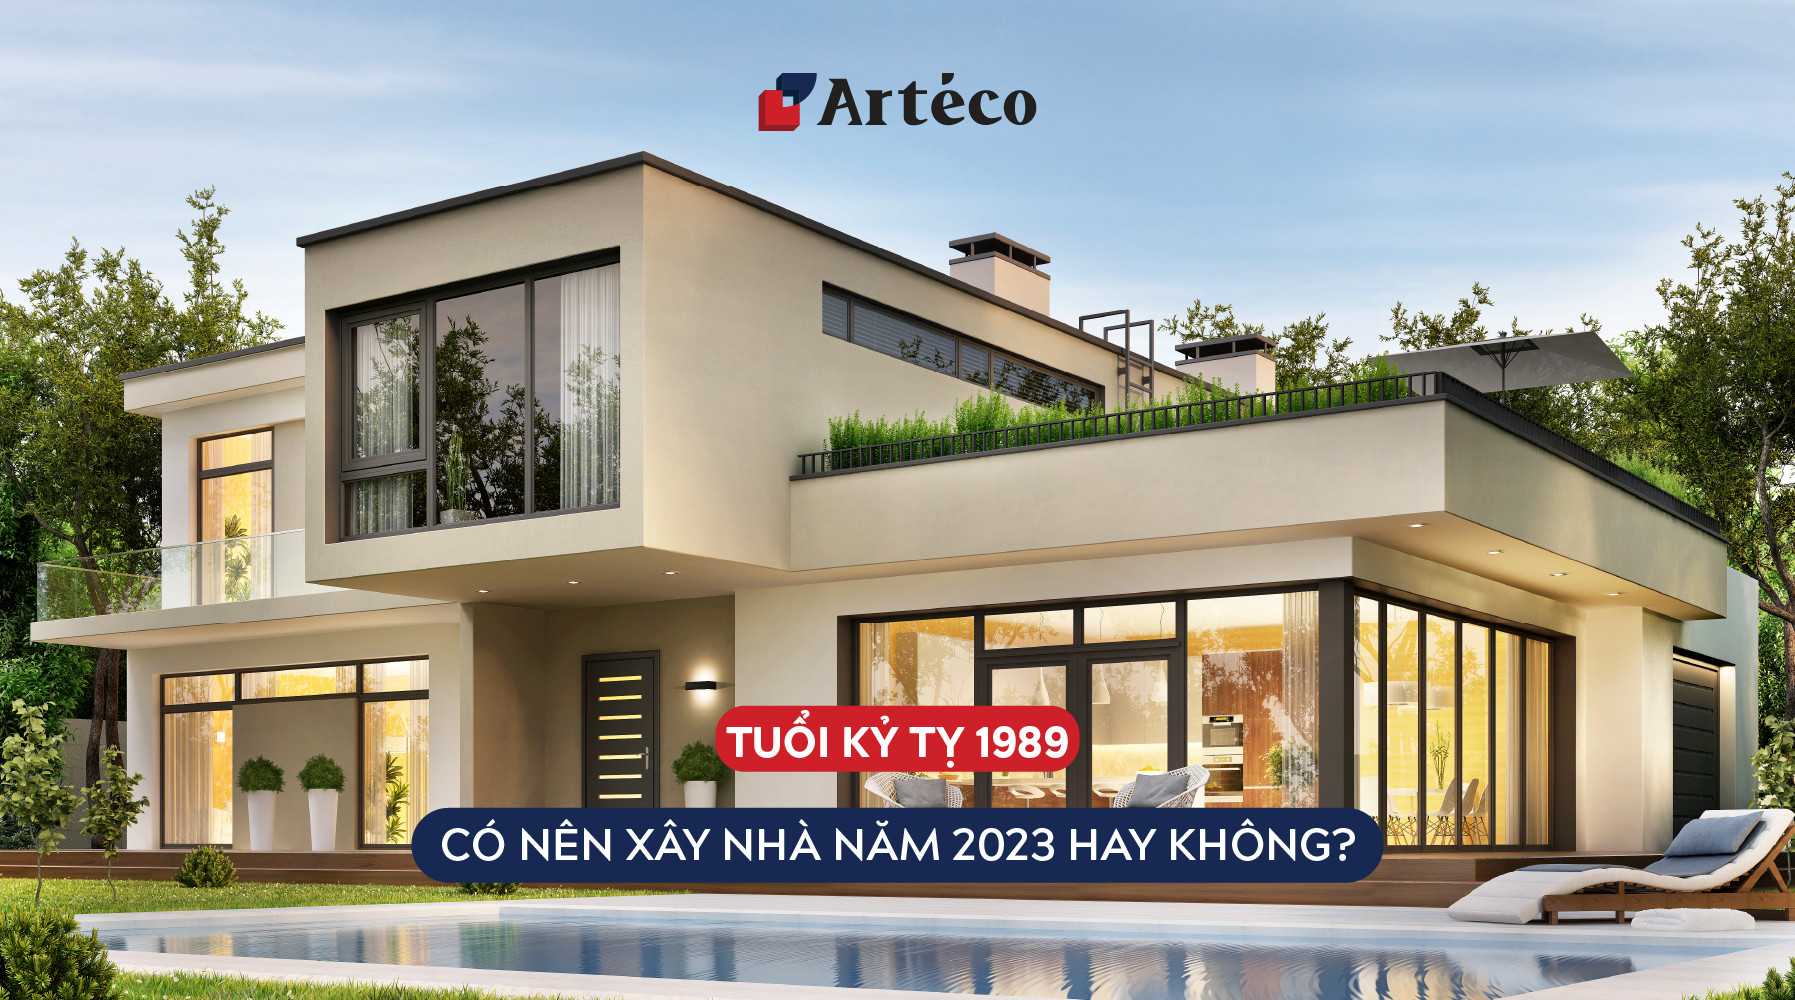 Arteco - 1989 construit une maison en 2023